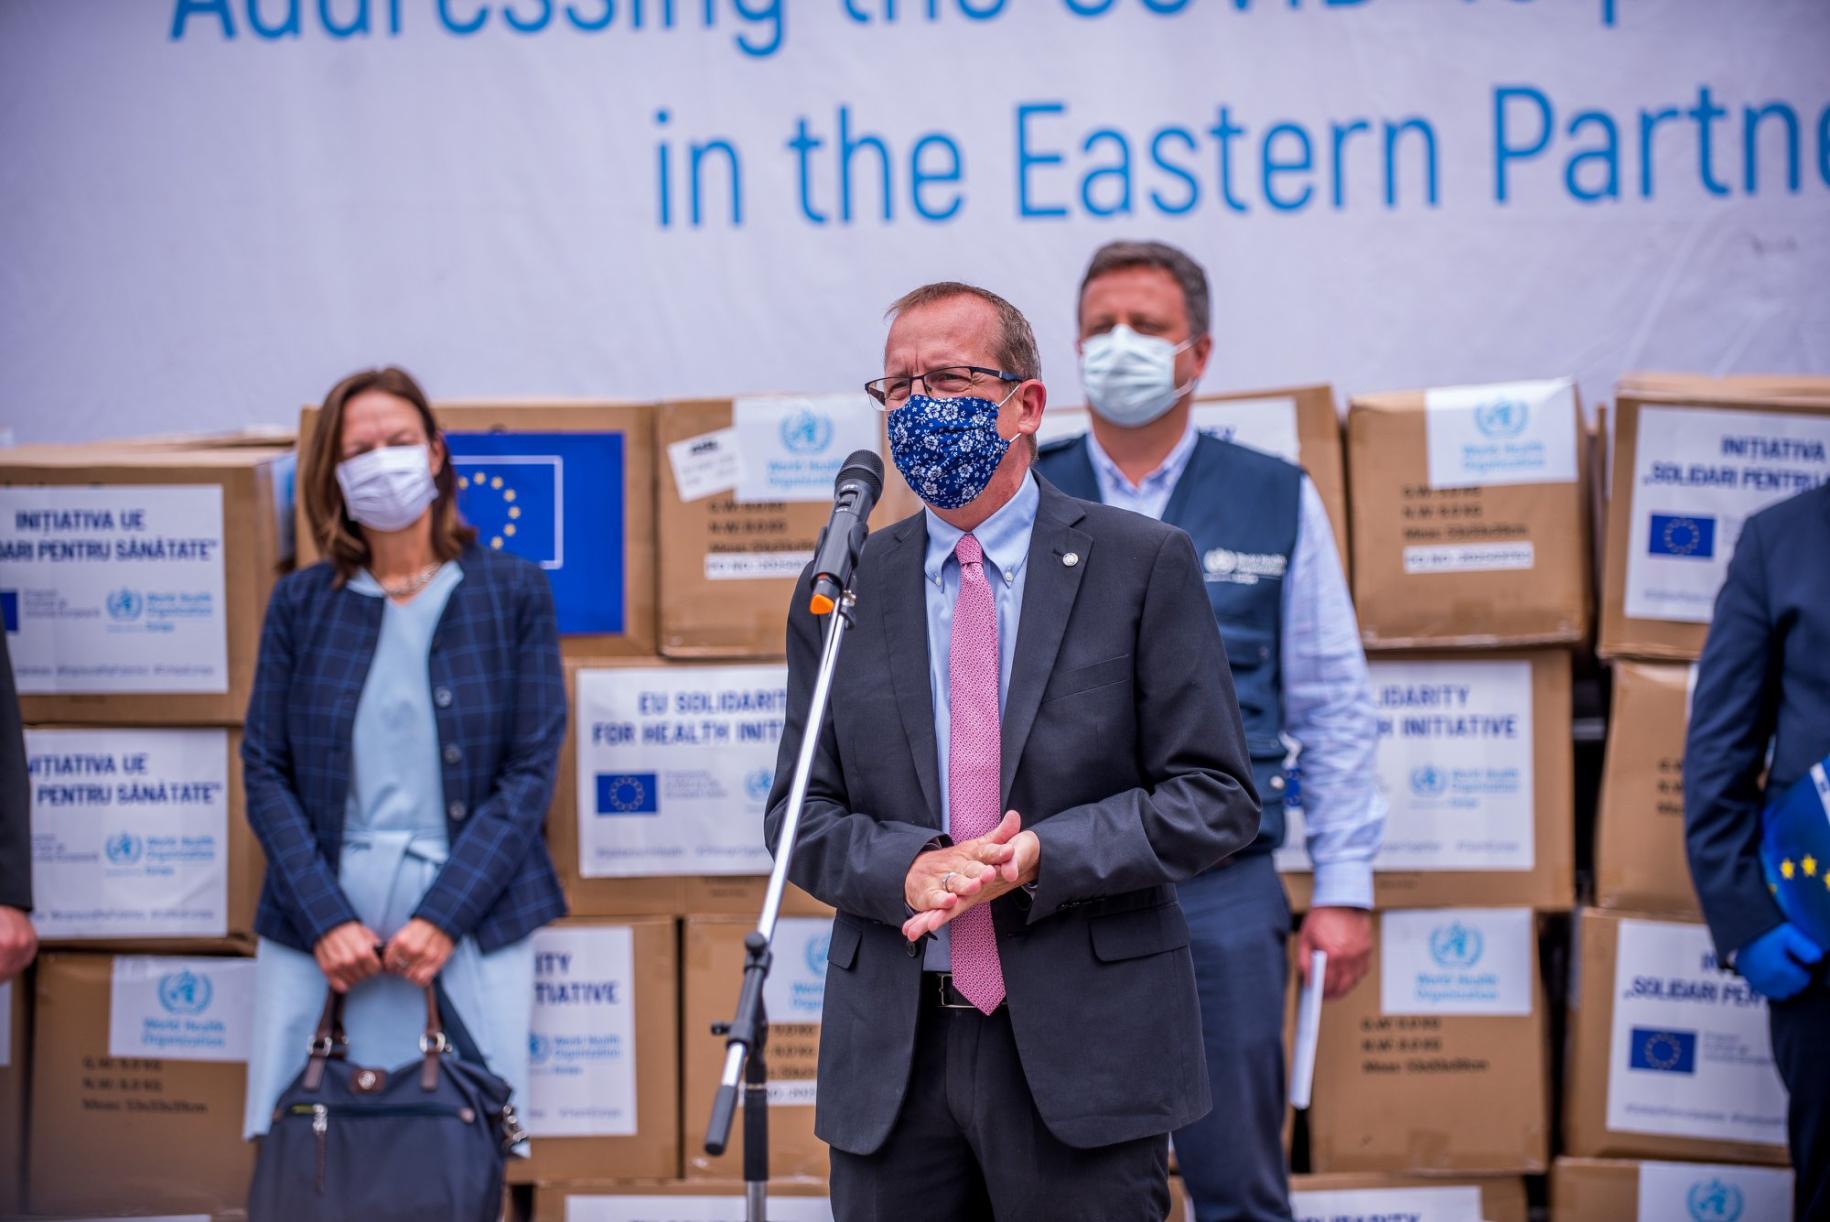 Simon Springett, le Coordonnateur résident de L'ONU en Moldova, s'exprime au micro entouré de trois autres personnes portant elles aussi des masques de protection. On aperçoit, en arrière-plan, des cartons contenant des vaccins livrés dans le cadre du mécanisme COVAX.